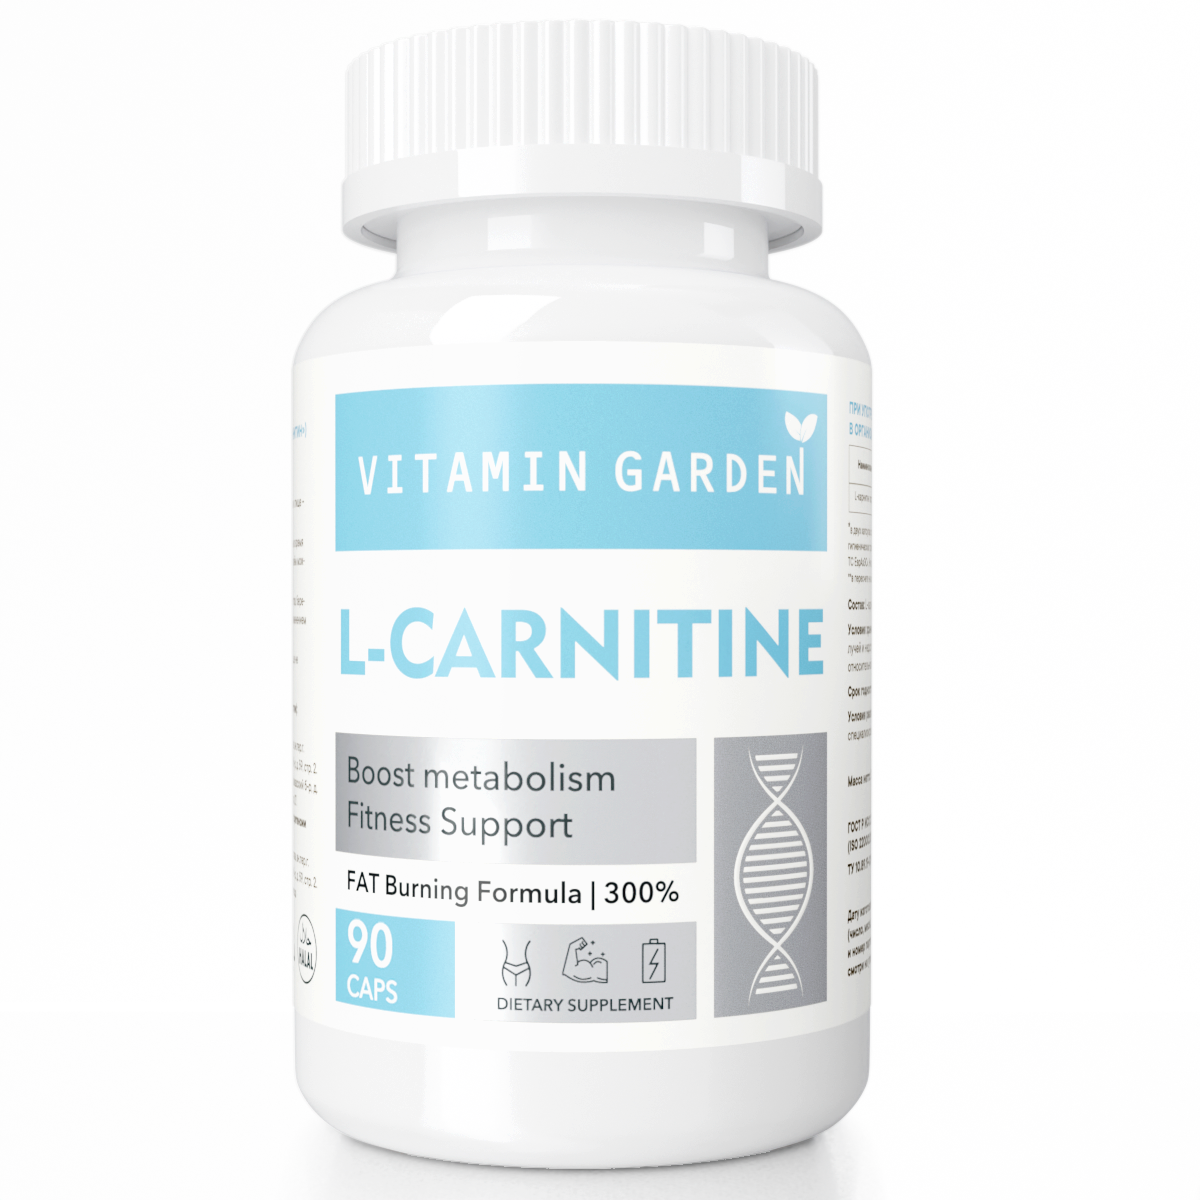 Л Карнитин 1320 мг, жиросжигатель для похудения, аминокислоты, для женщин и мужчин (L Carnitine), 90 капсул